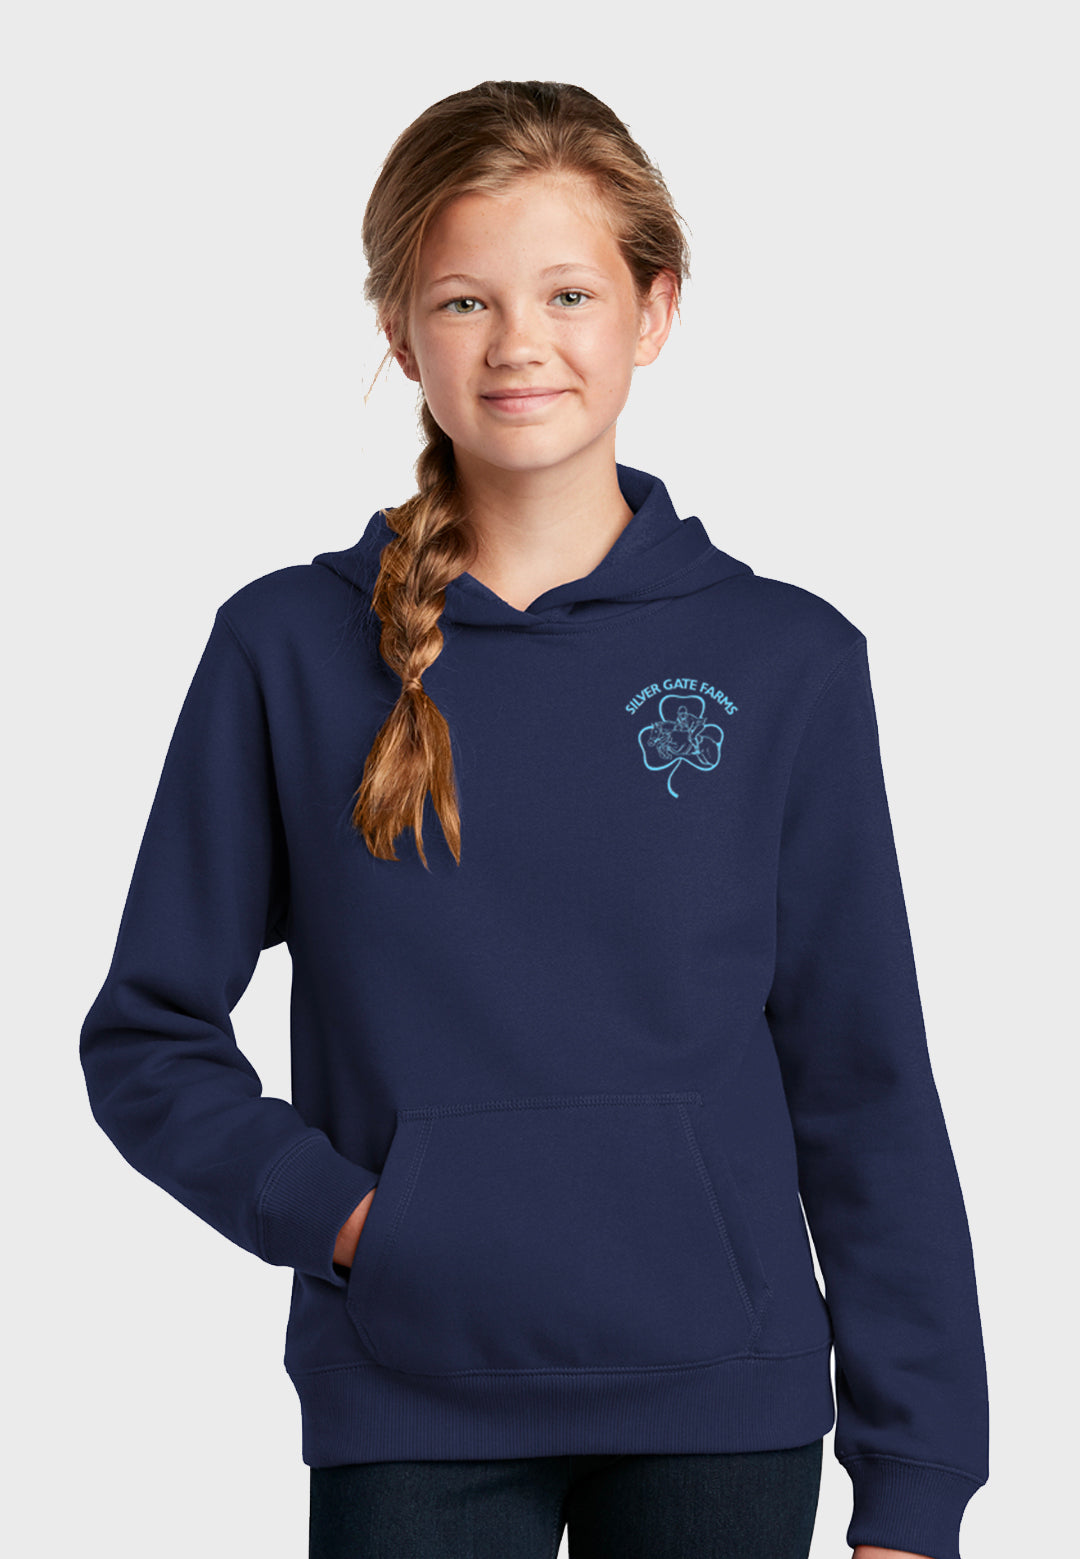 Silver Gate Farms Sport-Tek®  Youth Hooded Sweatshirt - Navy